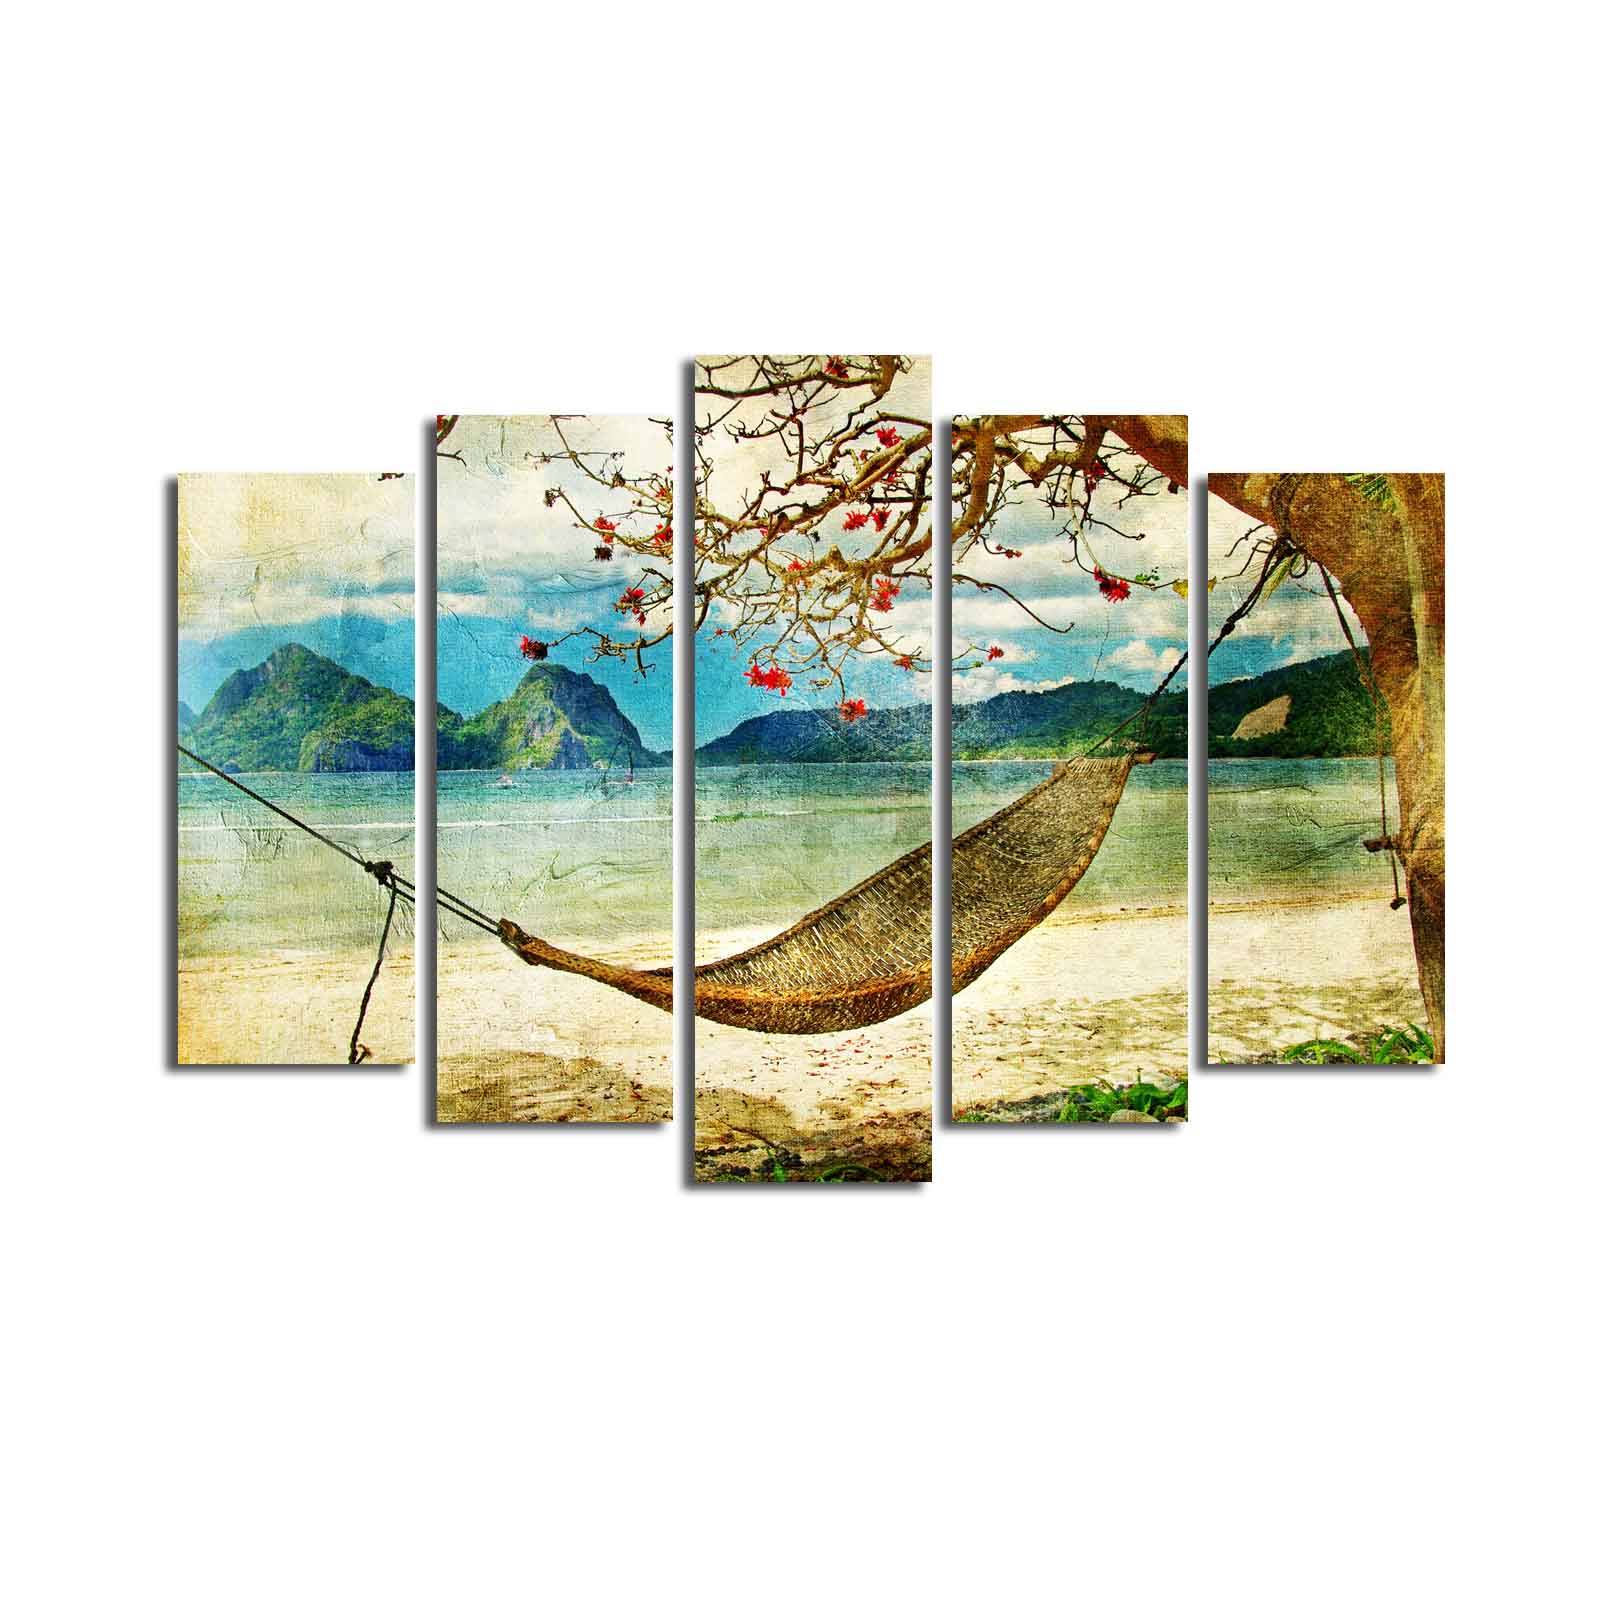 Pentittico Atos dipinto Pattern Swing sulla spiaggia